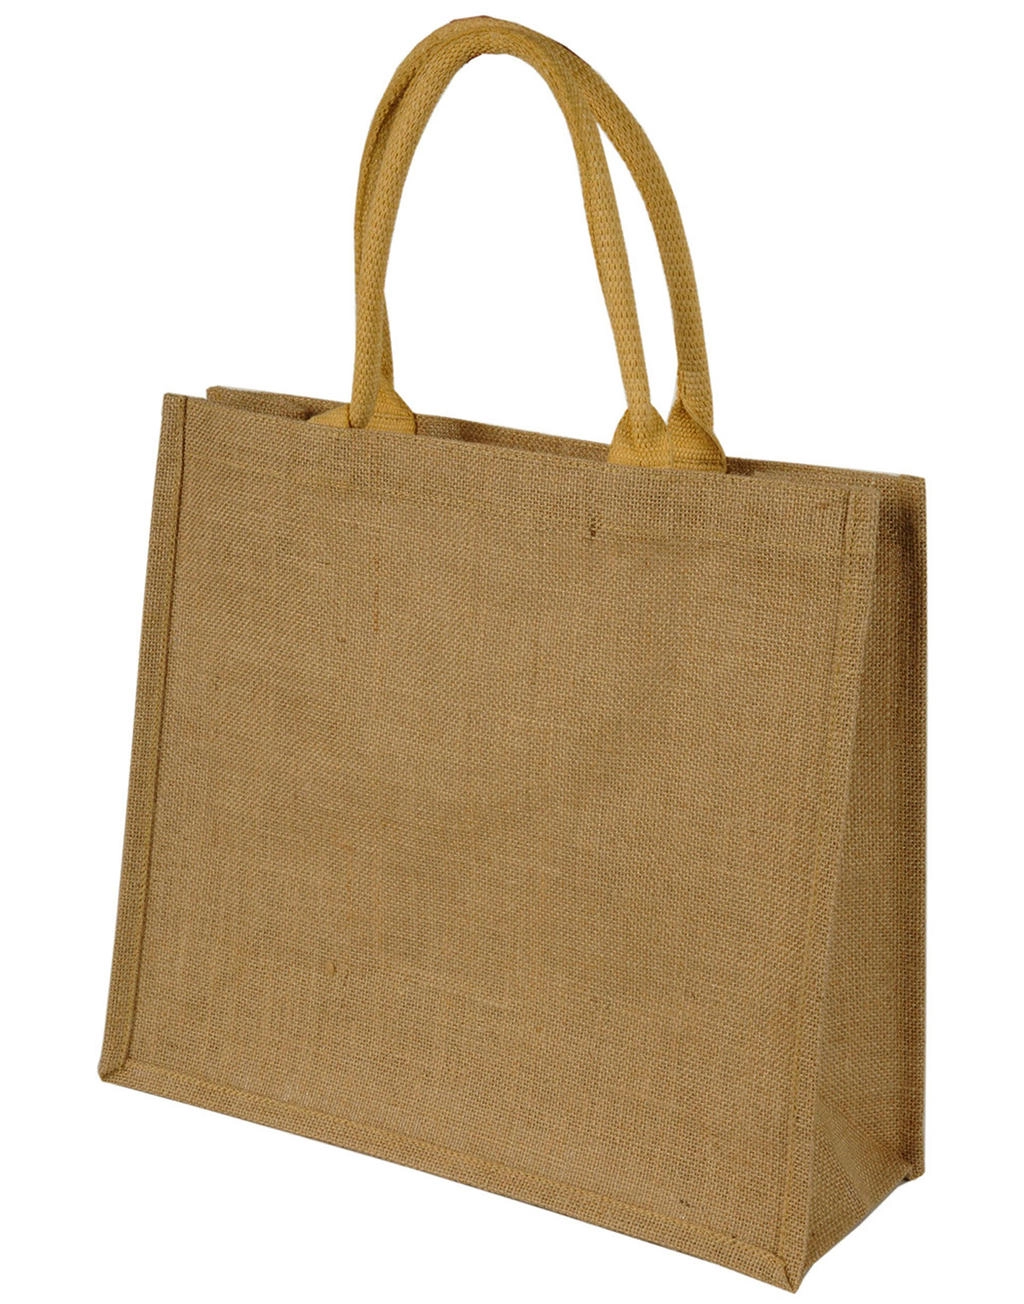 Chennai Short Handled Jute Shopper Bag zum Besticken und Bedrucken mit Ihren Logo, Schriftzug oder Motiv.